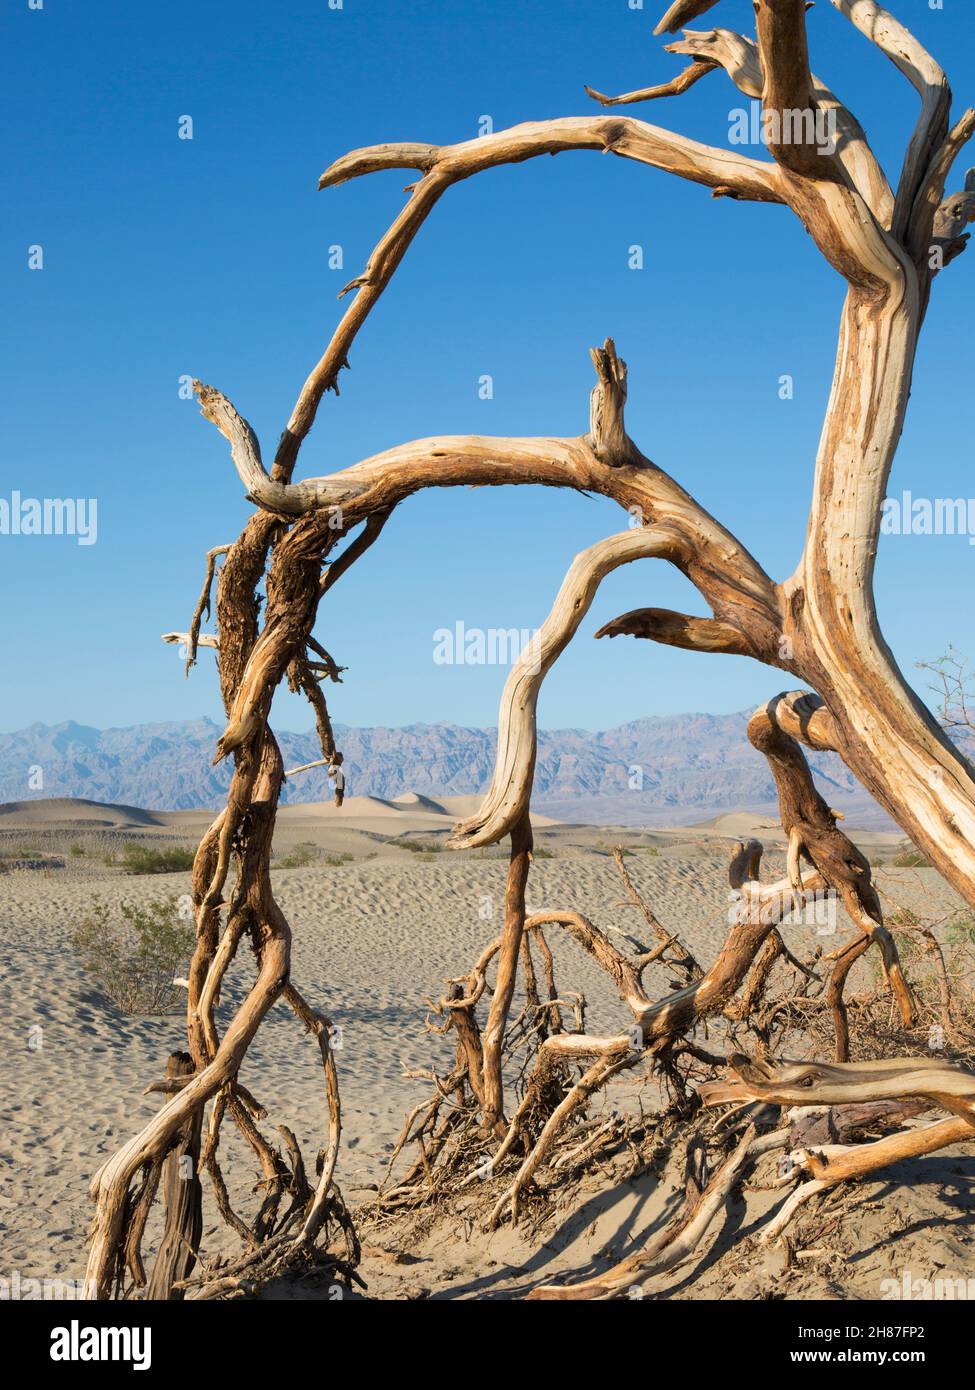 Parc national de Death Valley, Californie, États-Unis.Vue sur le désert jusqu'aux dunes de sable de Mesquite Flat et à Amargosa Range, arbre mort en premier plan. Banque D'Images